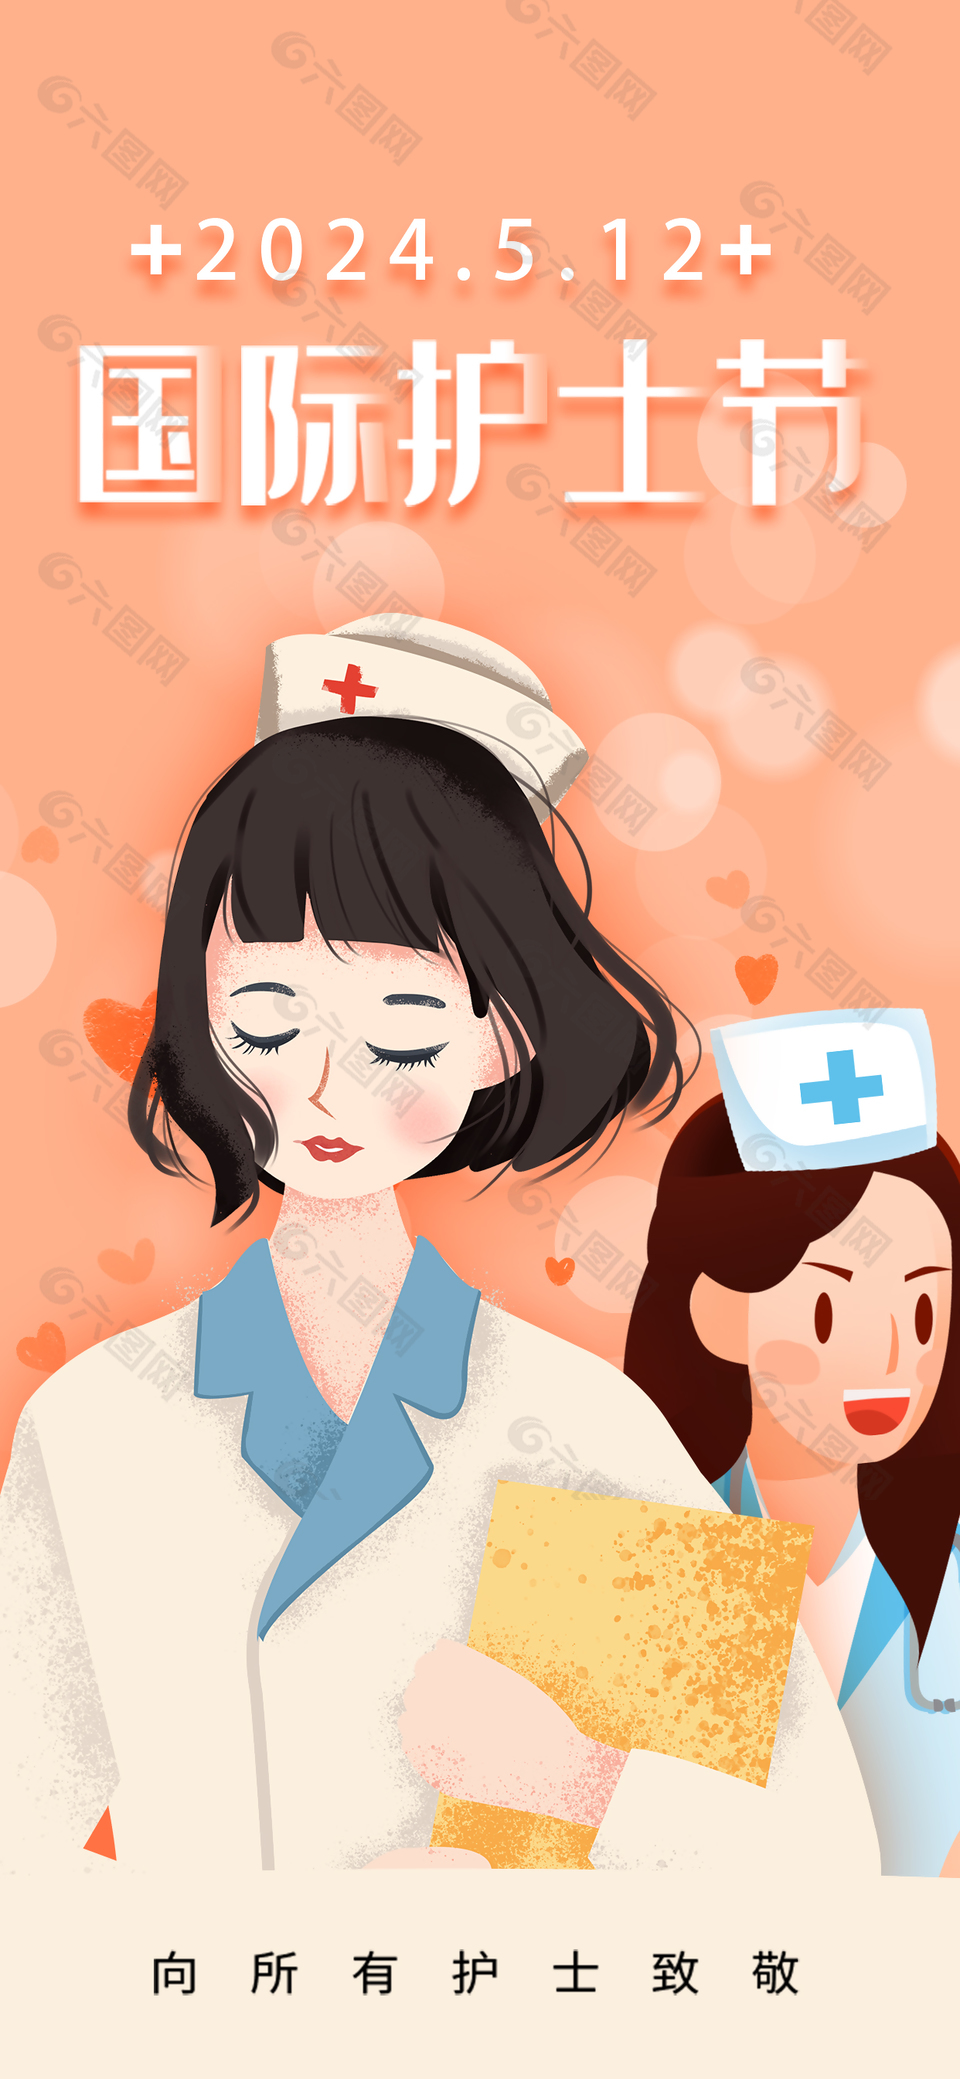 致敬护士创意手绘人物橙色主视觉海报